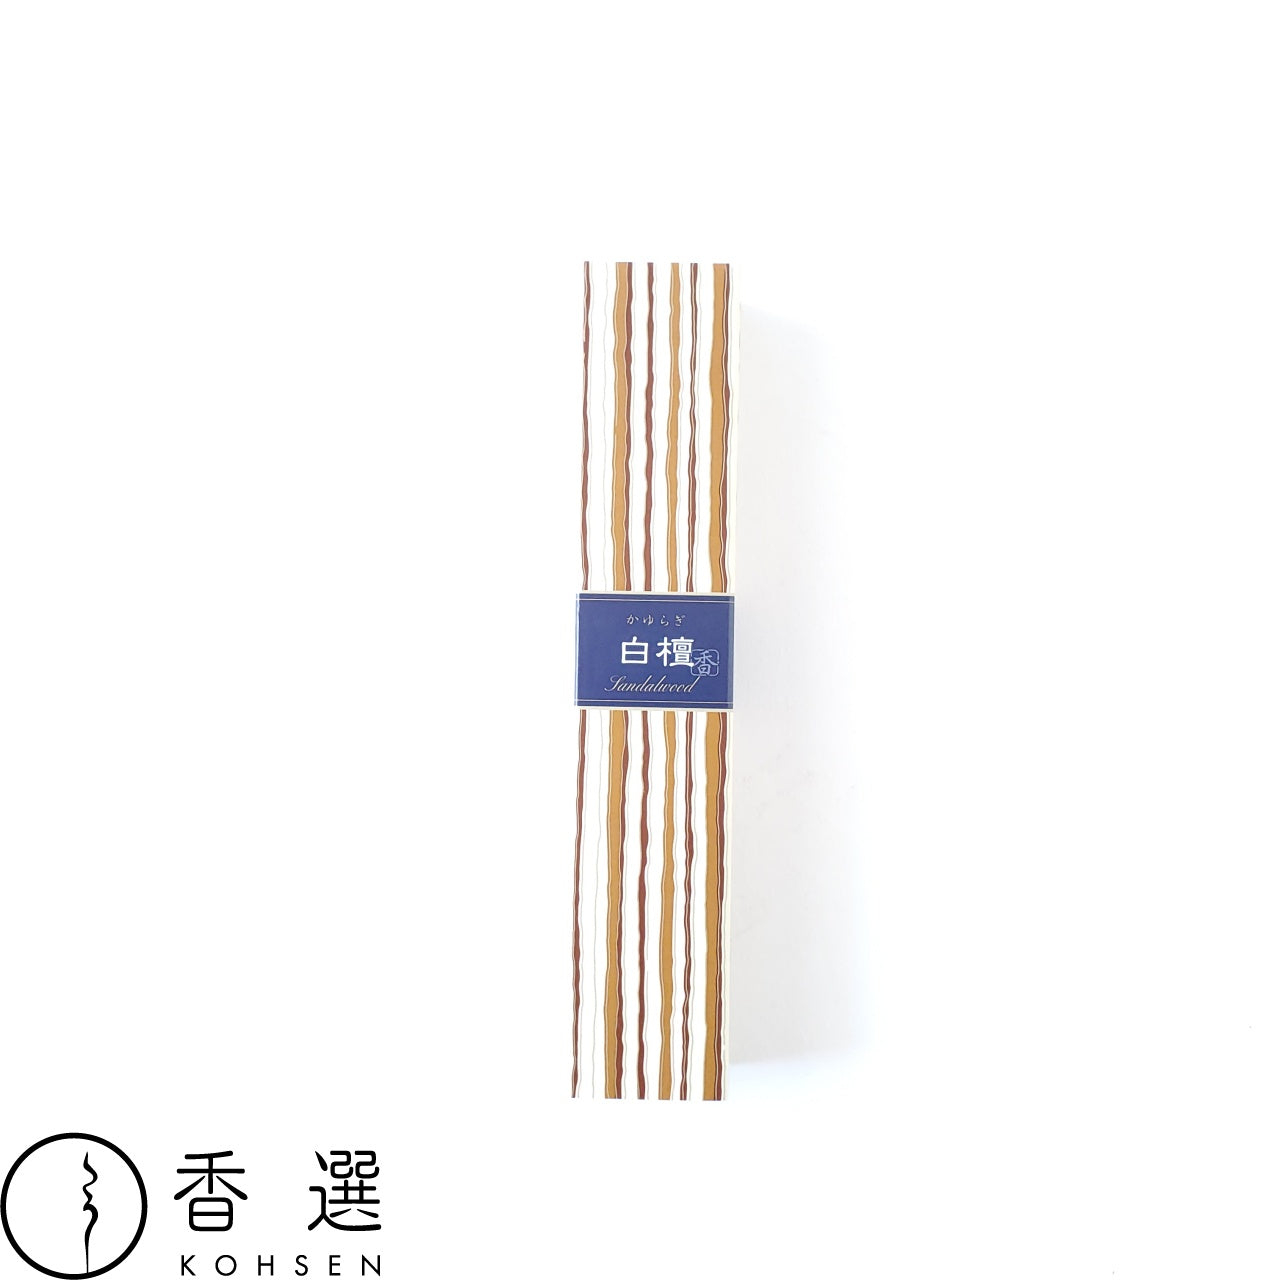 日本香堂 かゆらぎ 白檀 びゃくだん sandalwood お香 お線香 インセンス スティック型 incense 日本製 アロマ